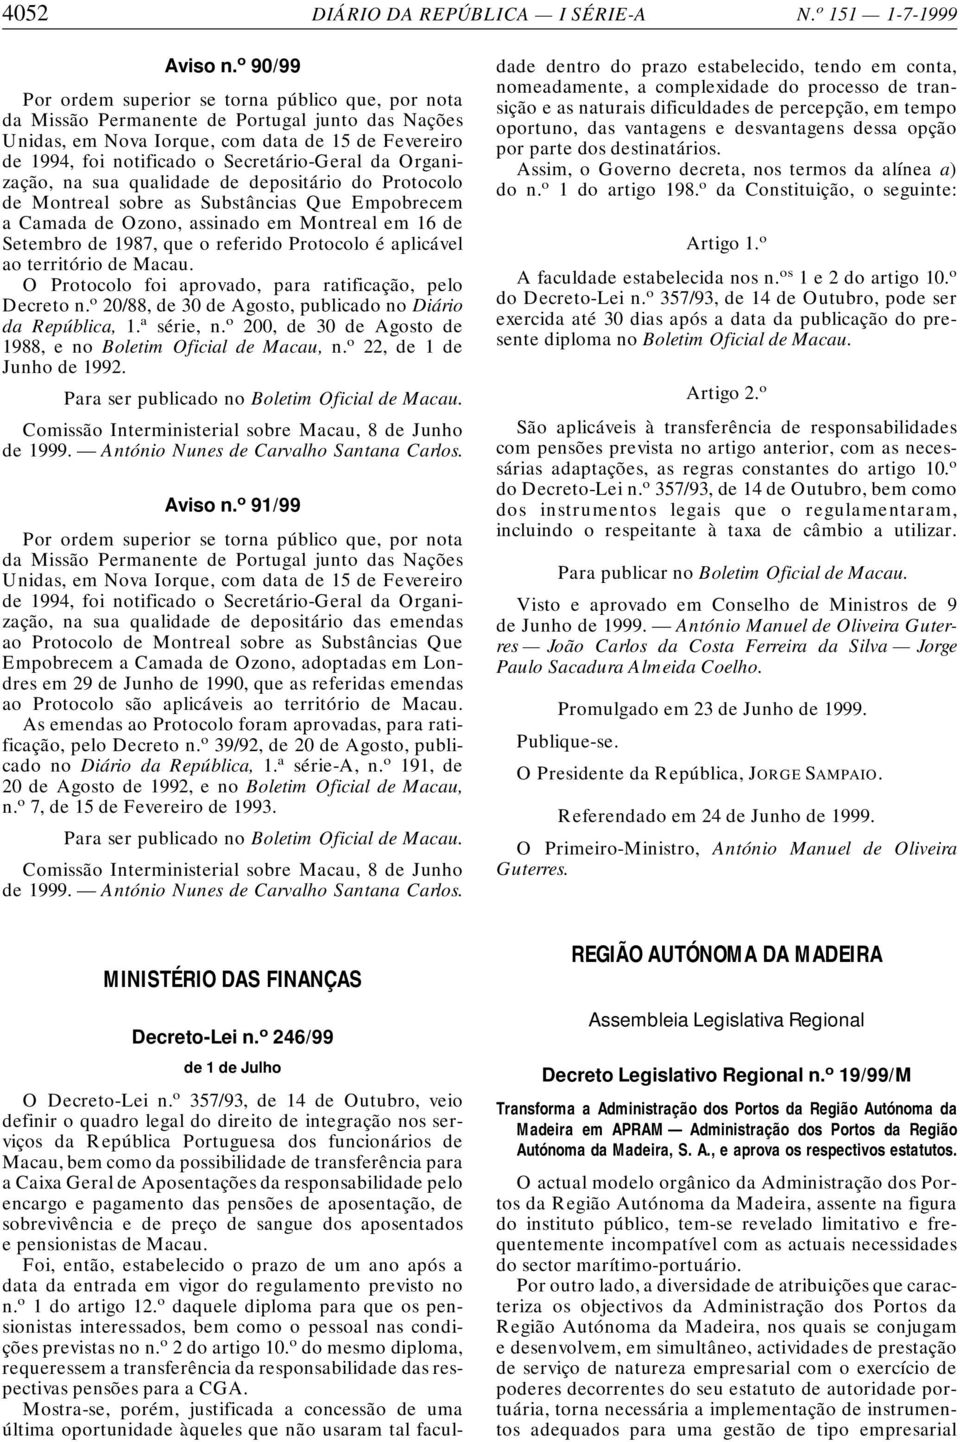 Secretário-Geral da Organização, na sua qualidade de depositário do Protocolo de Montreal sobre as Substâncias Que Empobrecem a Camada de Ozono, assinado em Montreal em 16 de Setembro de 1987, que o